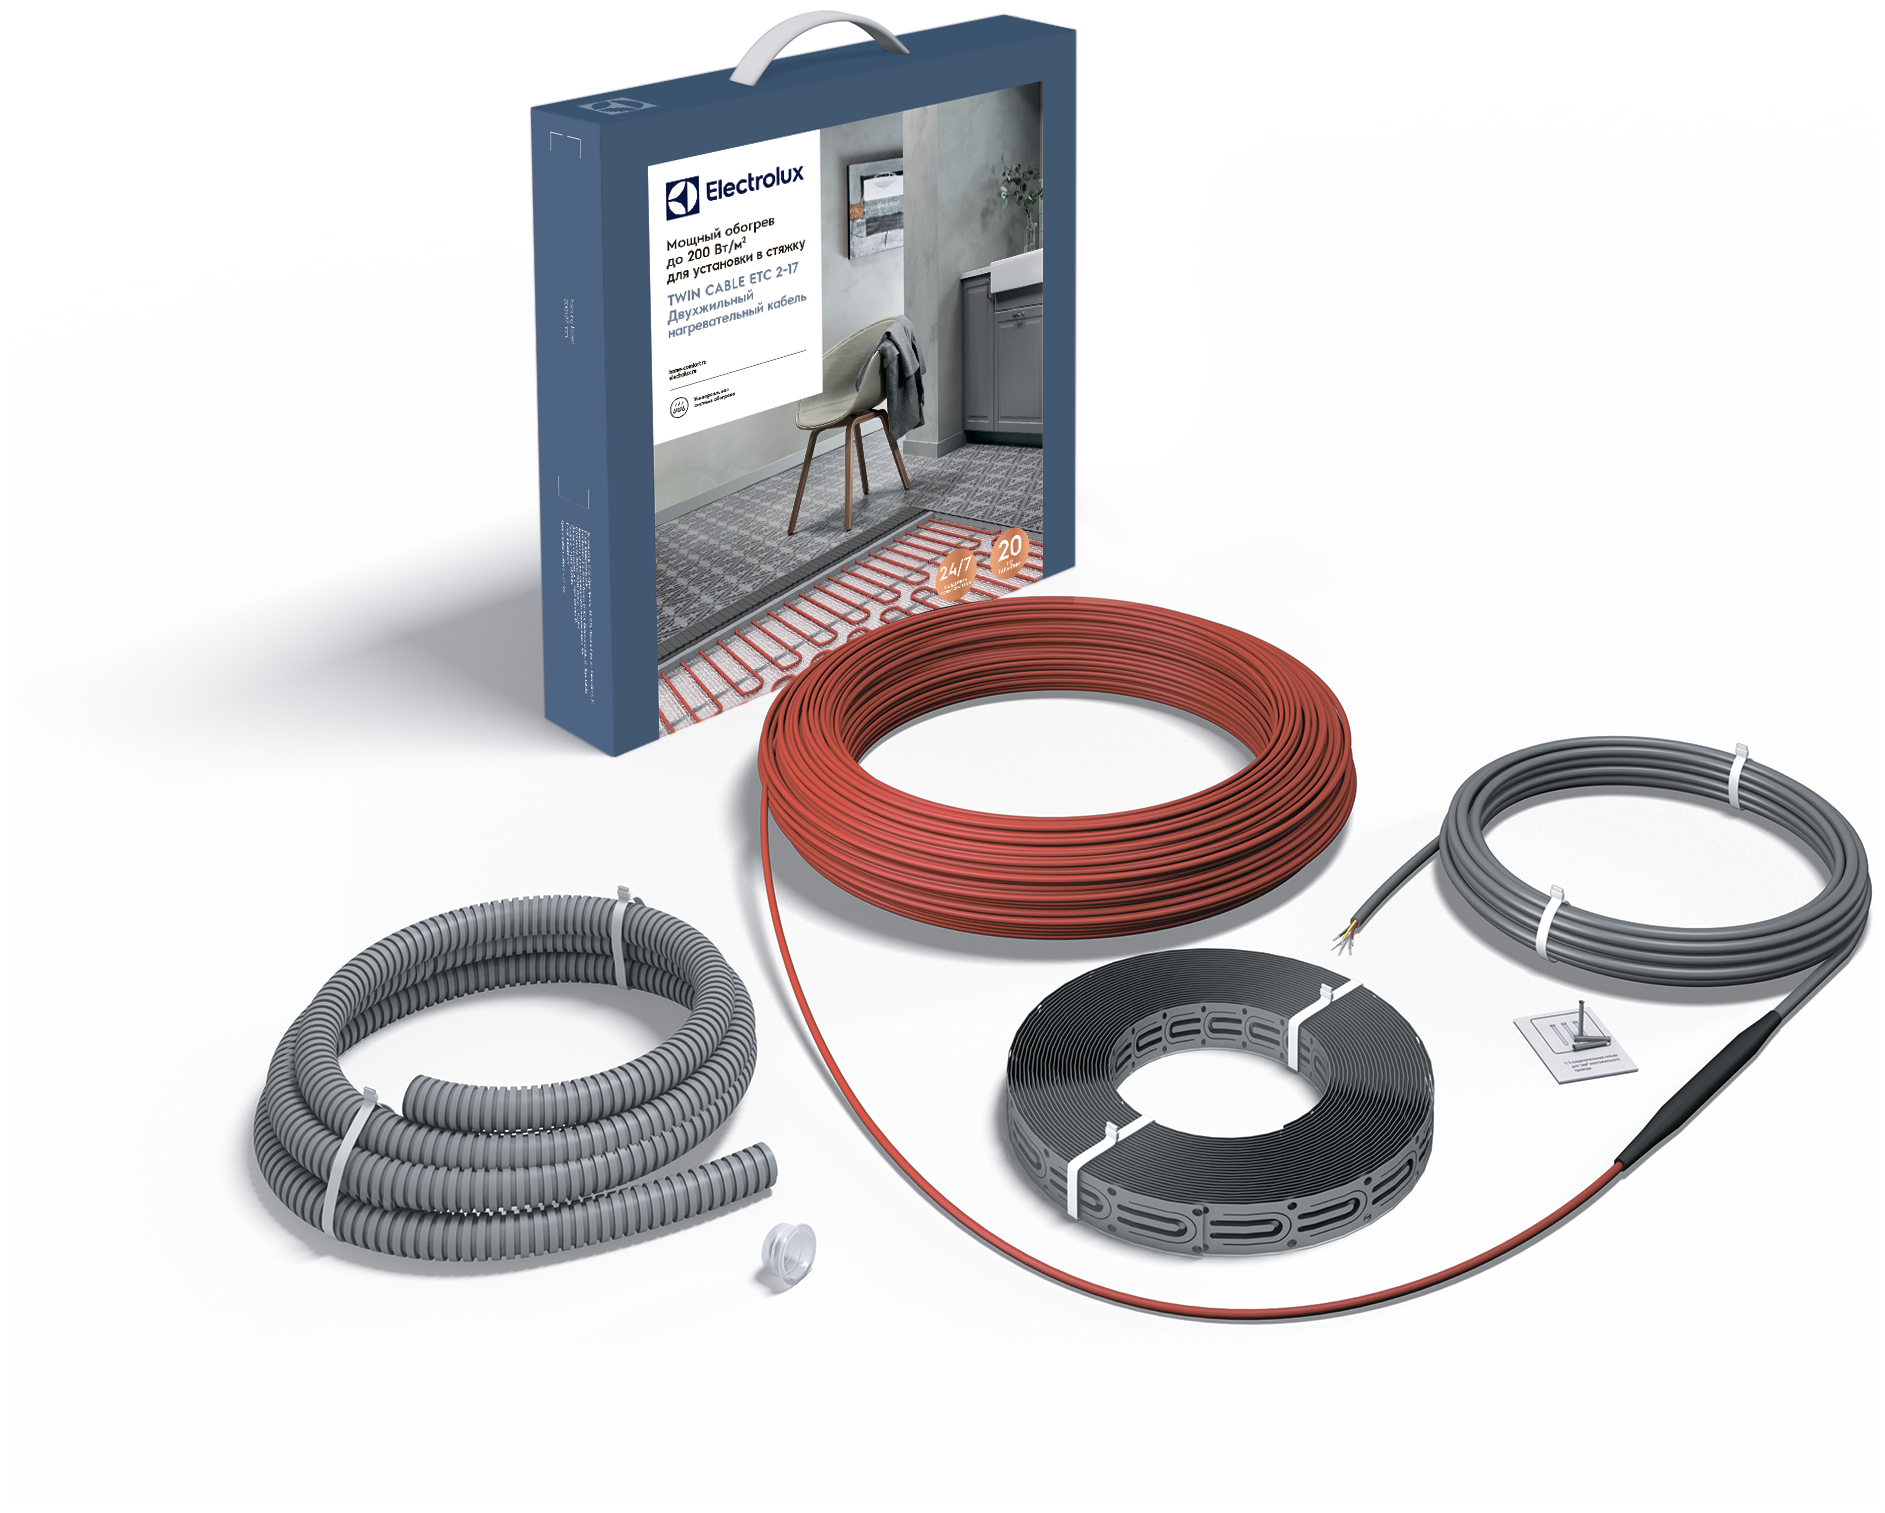 Греющий кабель, Electrolux, ETC 2-17 TWIN CABLE, 16.7 м2, длина кабеля 117.7 м - фотография № 2